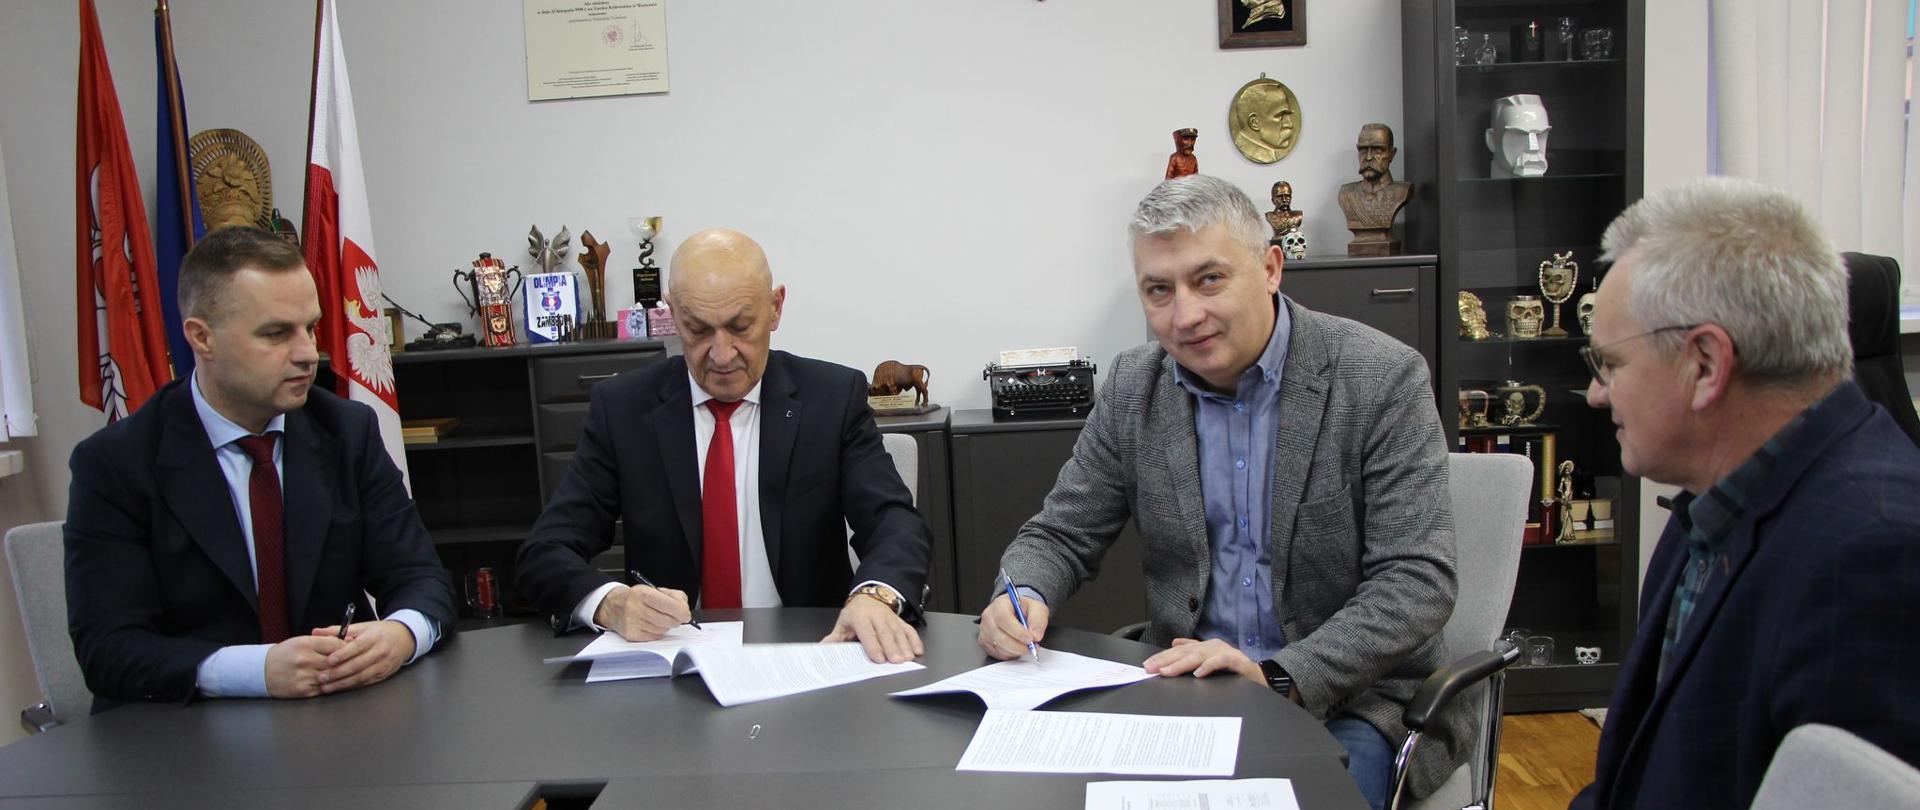 Podpisanie umowy na remont drogi powiatowej Srebrna – Żabikowo 